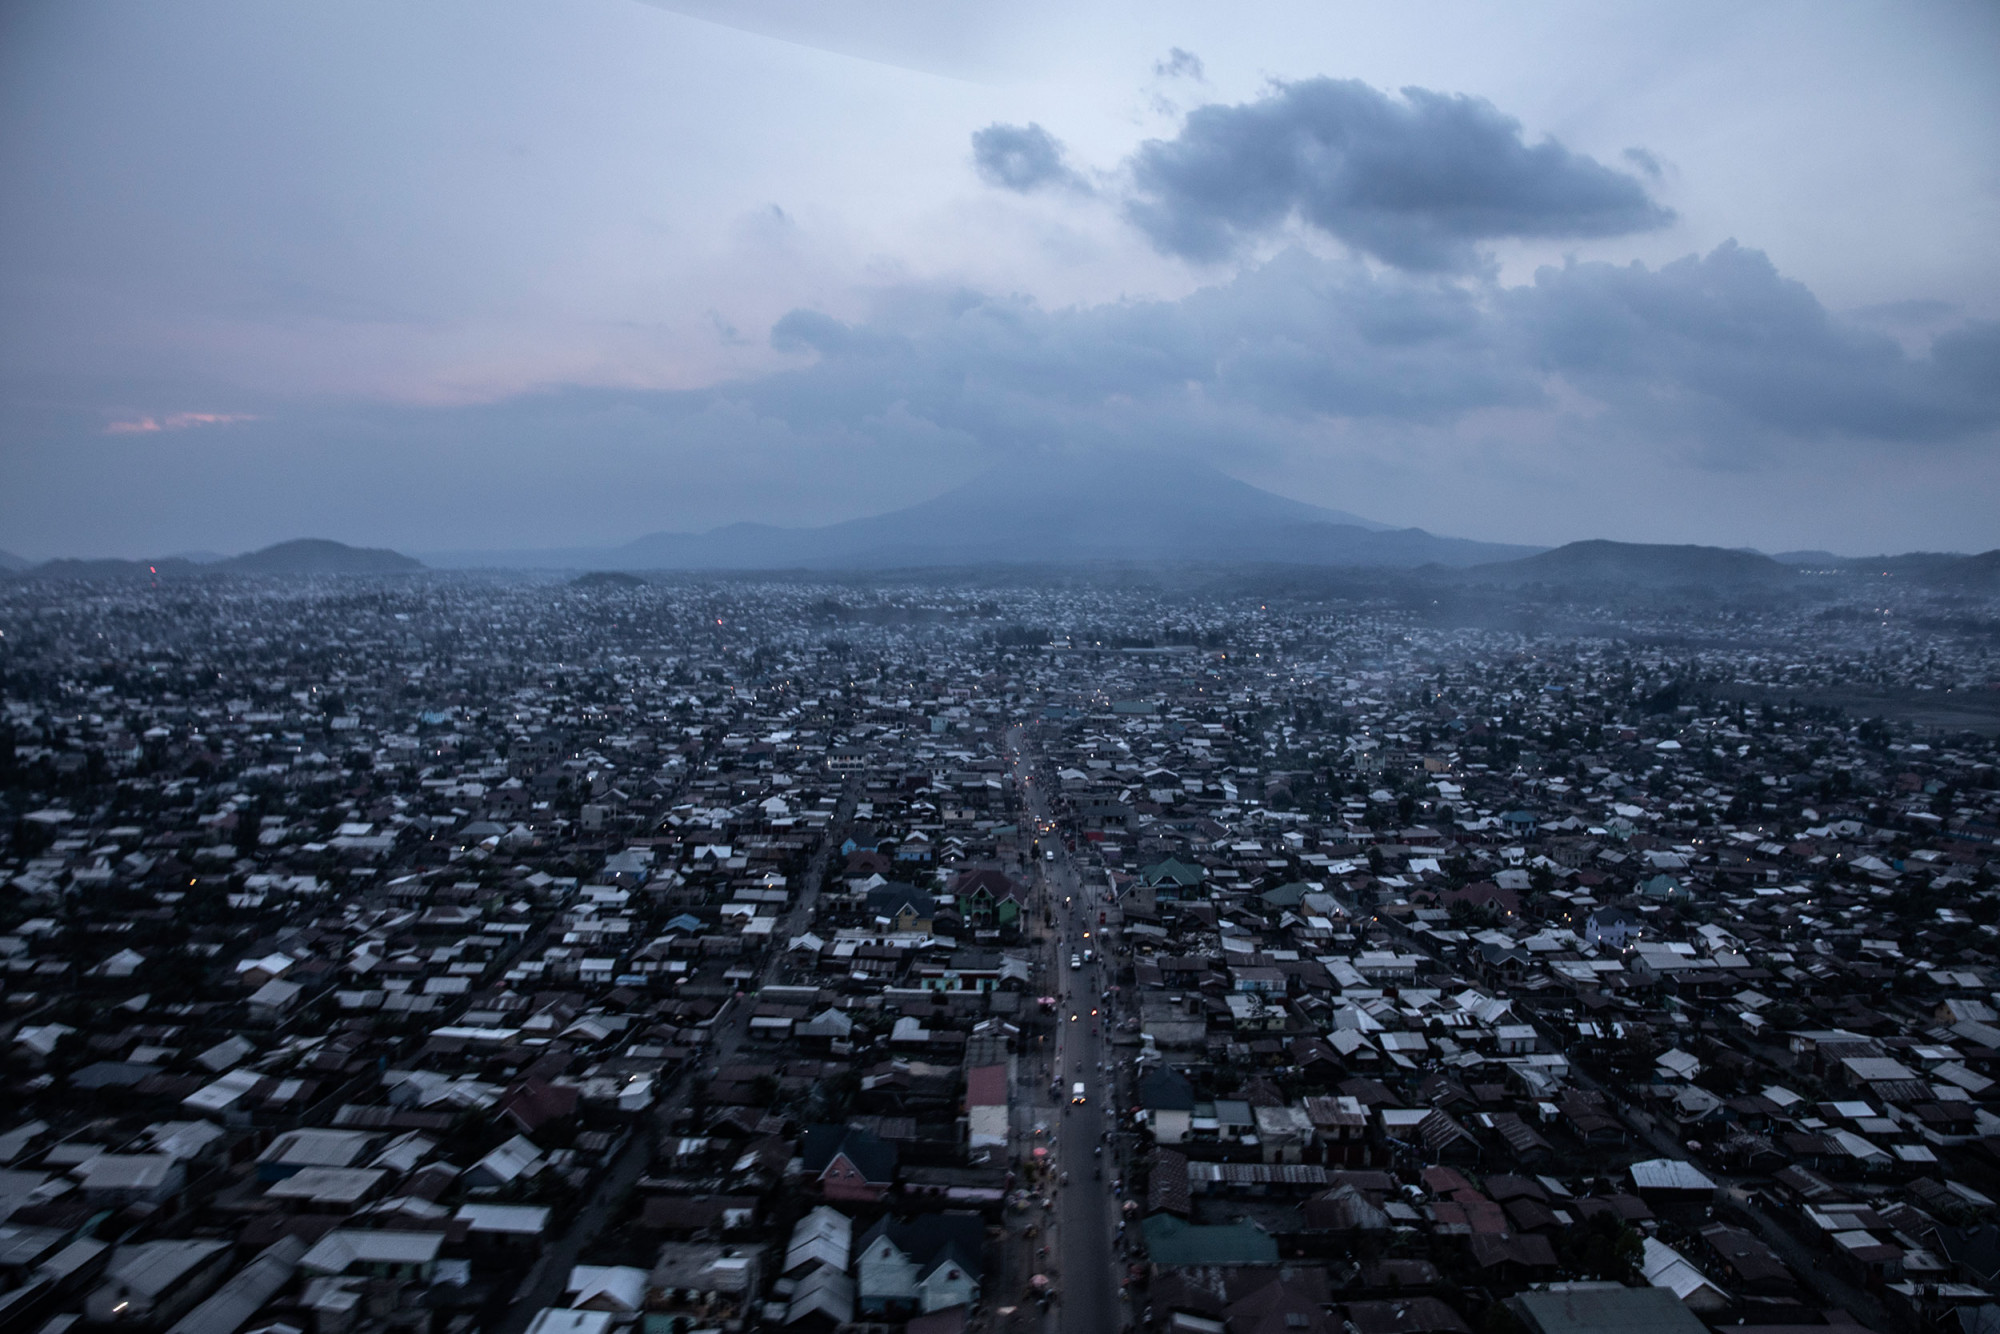 Goma, Nord-Kivu, 30 mai 2021. Huit jours après son éruption, le Nyiragongo dresse sa silhouette menaçante au-dessus de la ville de 700 000 habitants. © Finbarr O’Reilly pour la Fondation Carmignac